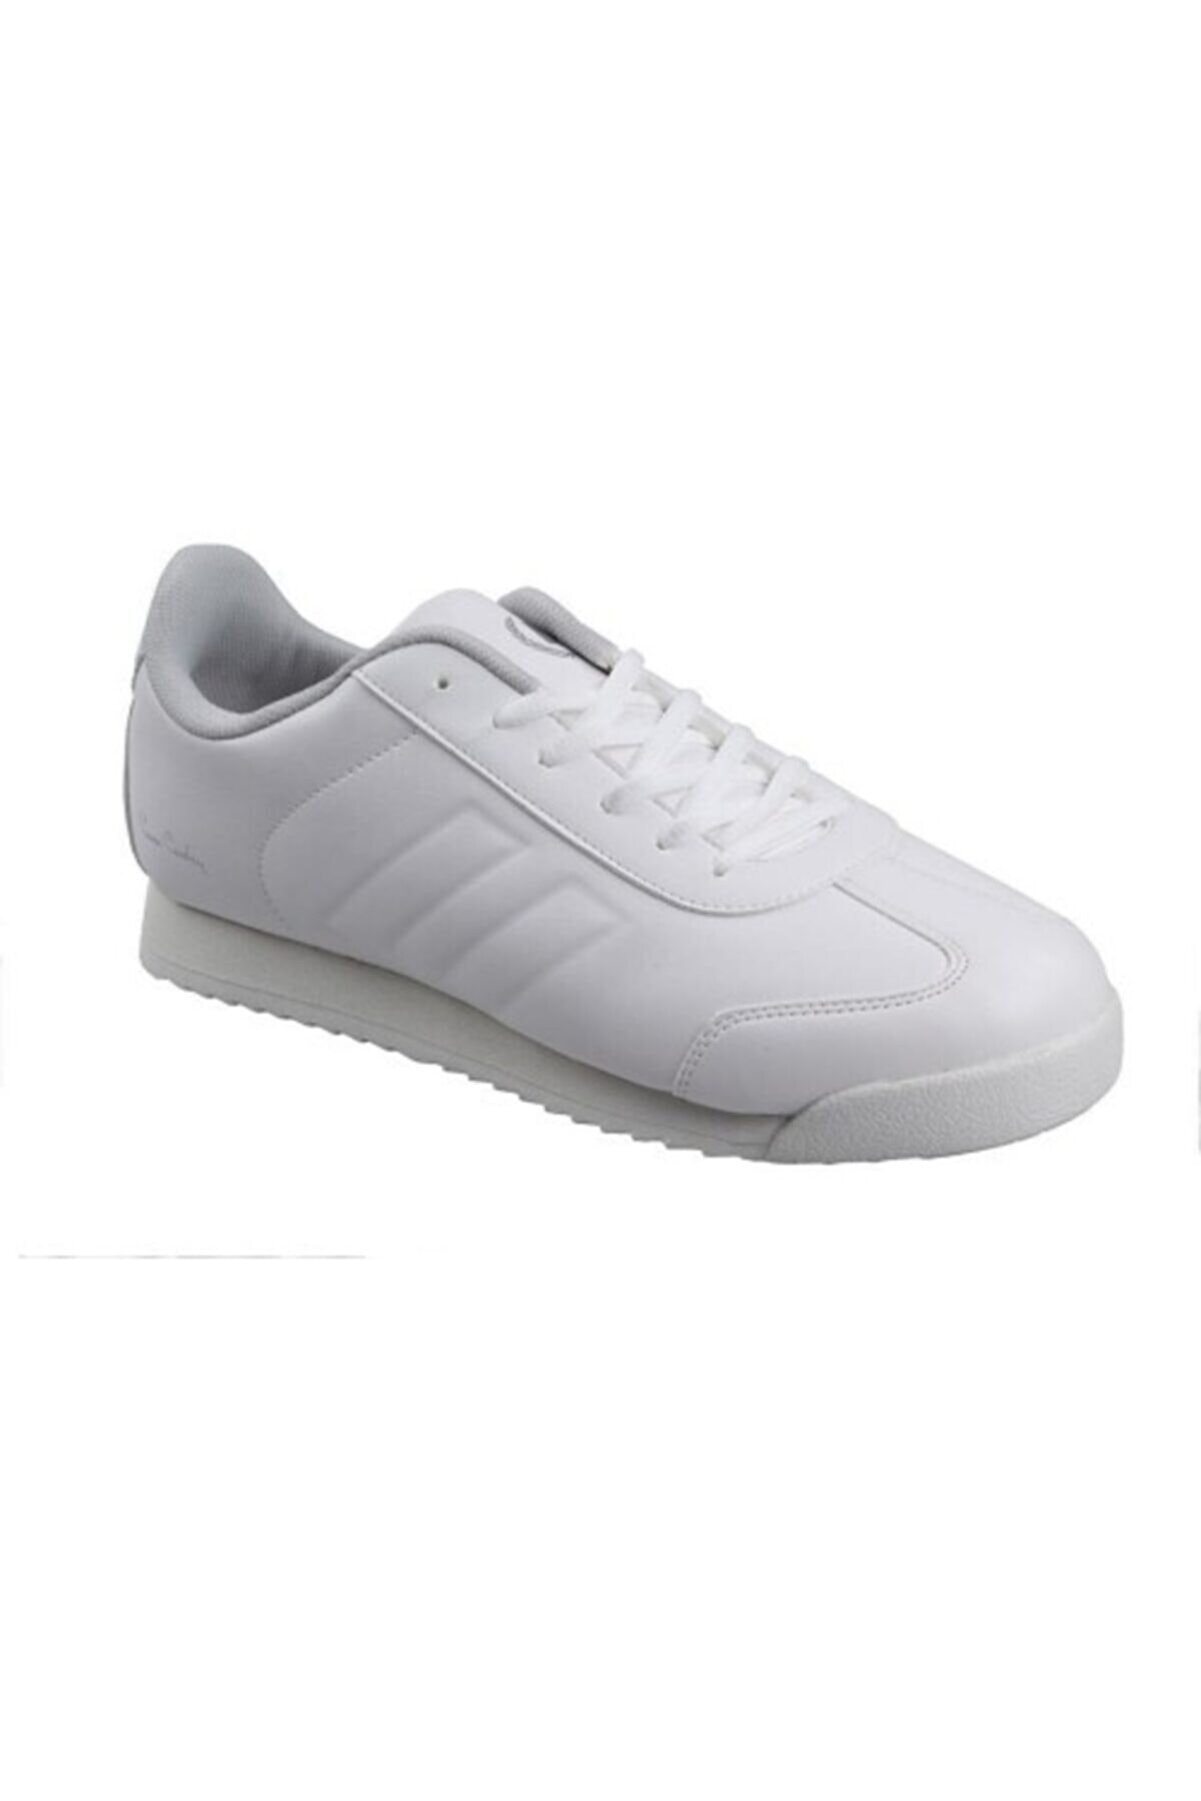 Pierre Cardin Erkek Beyaz Pc-30484 Sneaker Spor Ayakkabı